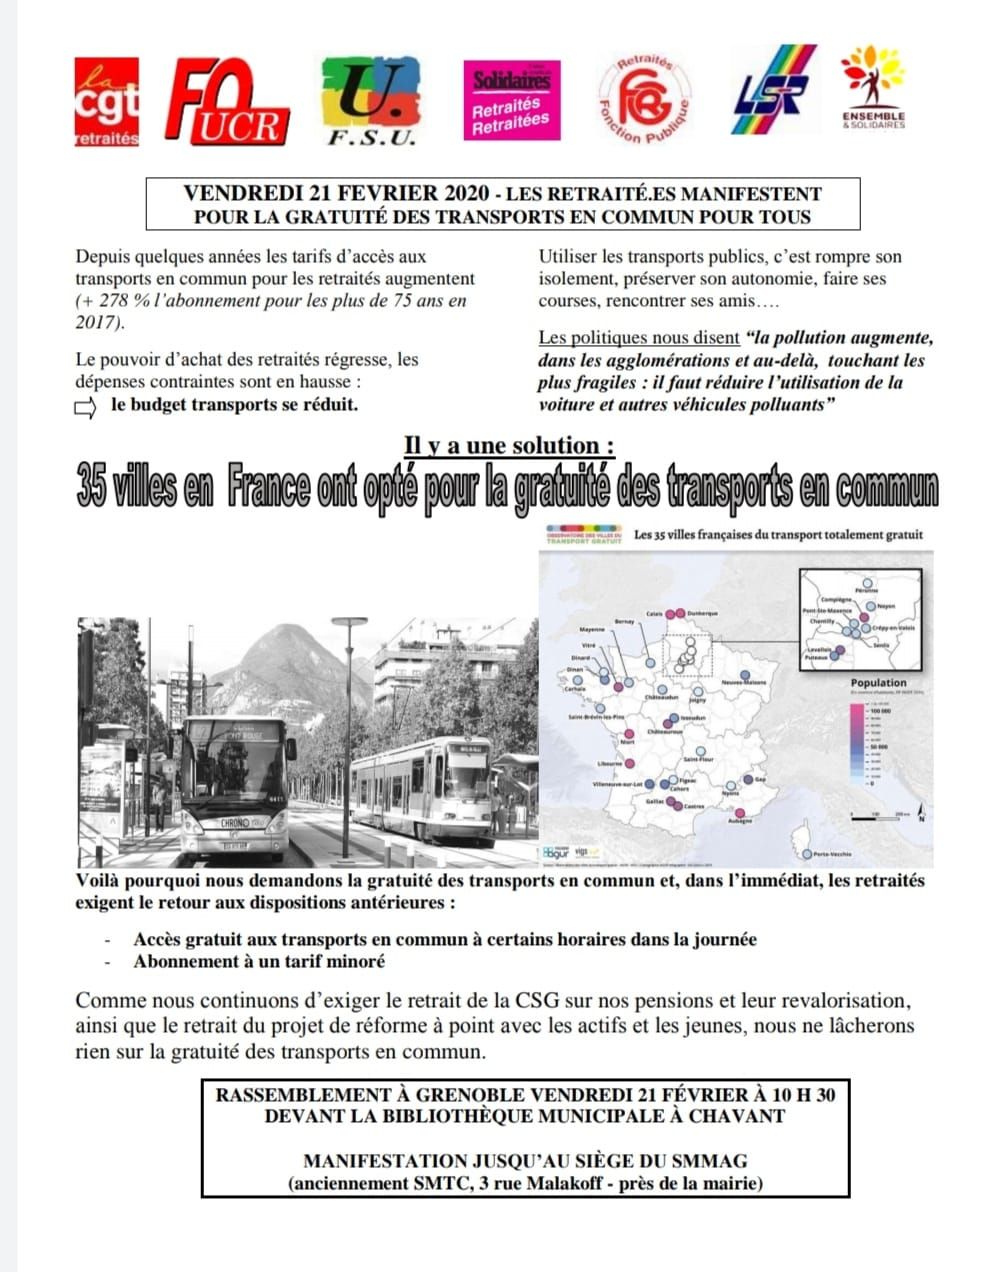 Gratuité des transports: manifestation 21 février 2020 à 10H30, départ bibliothèque  Chavant Grenoble - Michel Barrionuevo - Sassenage